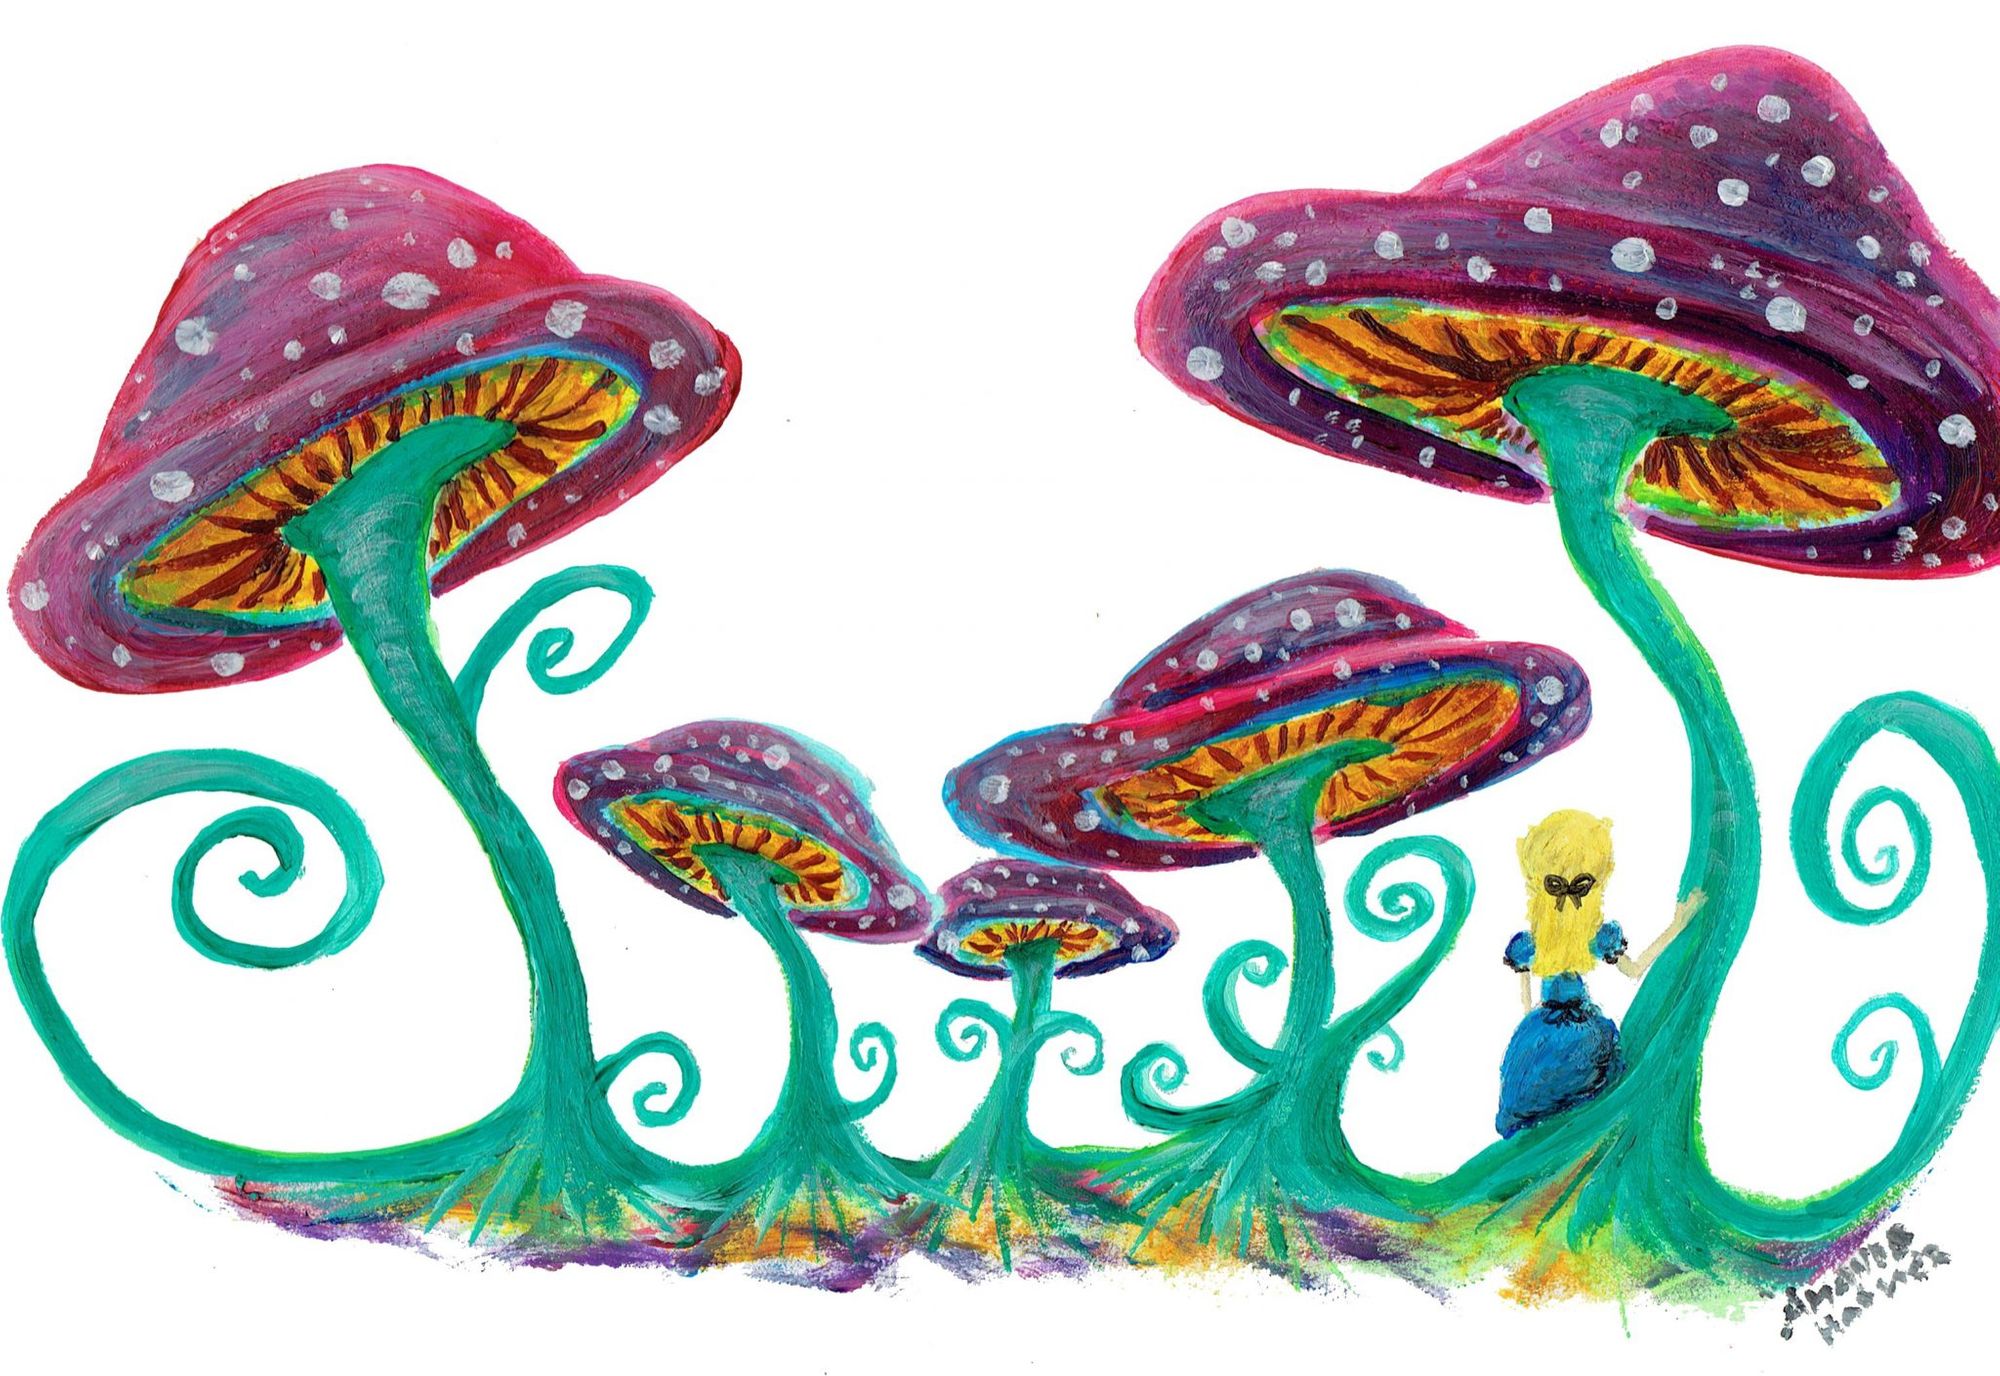 The “Magic” Behind Magic Mushrooms